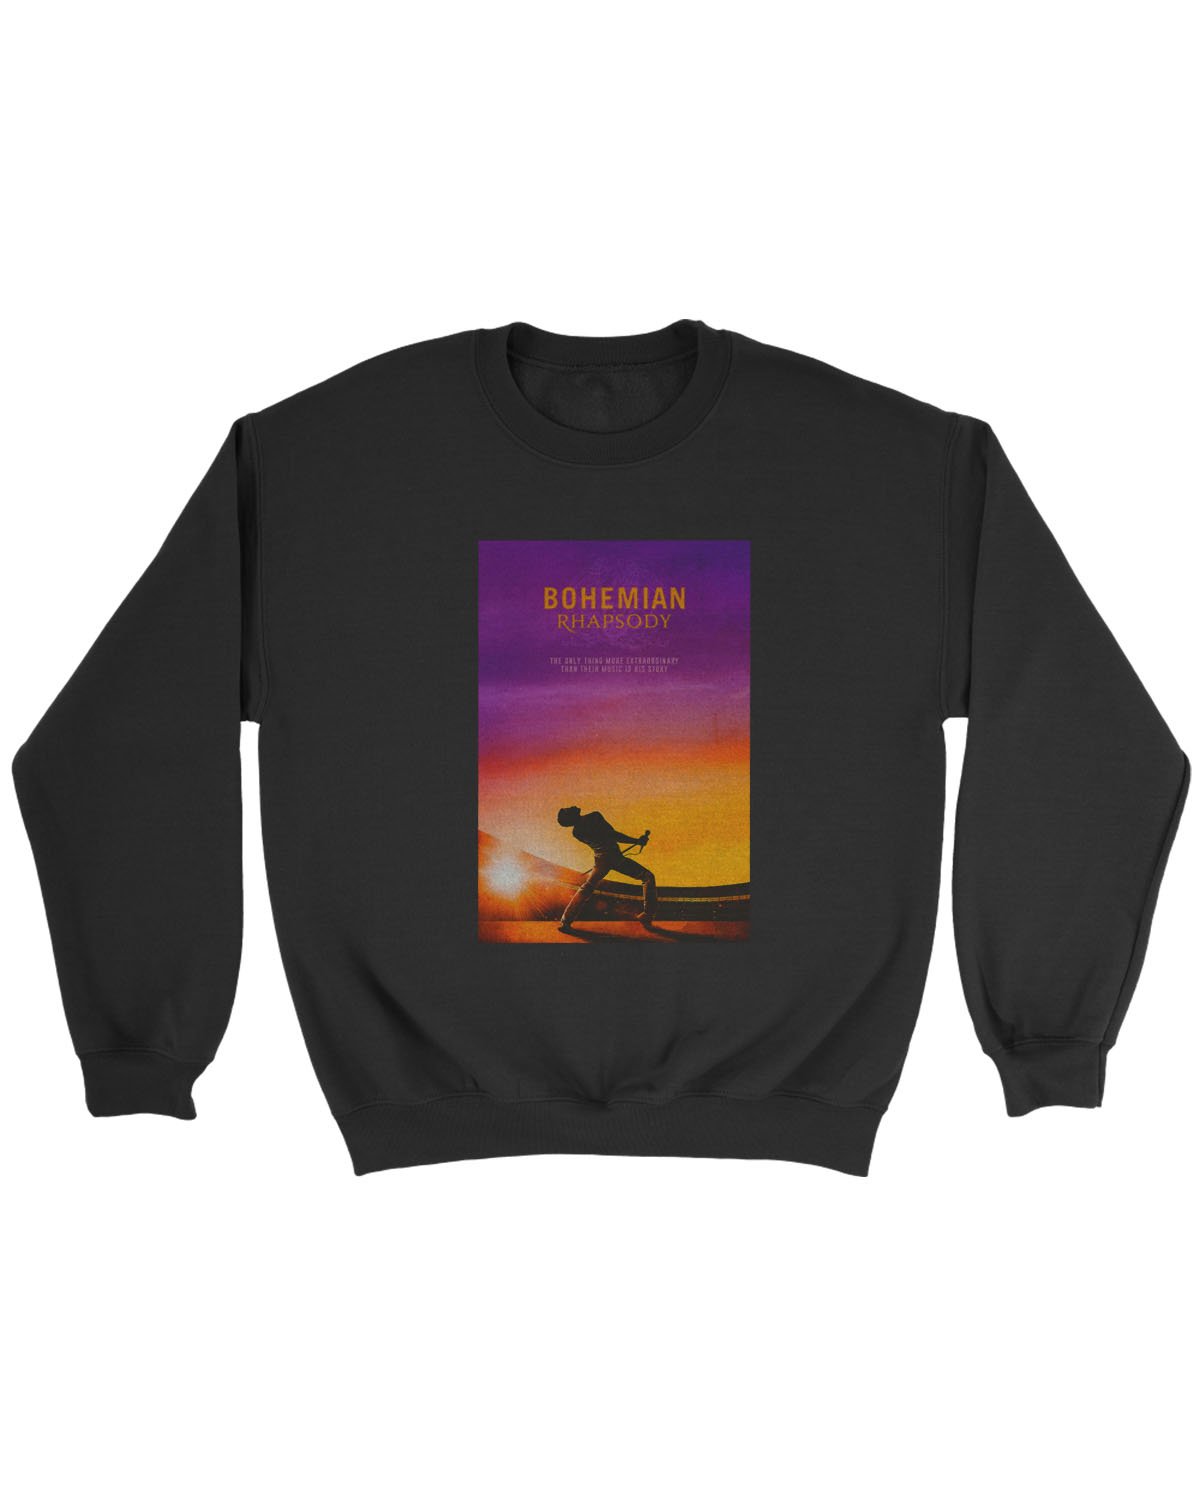 Bohemian Rhapsody Poster Sweatshirt